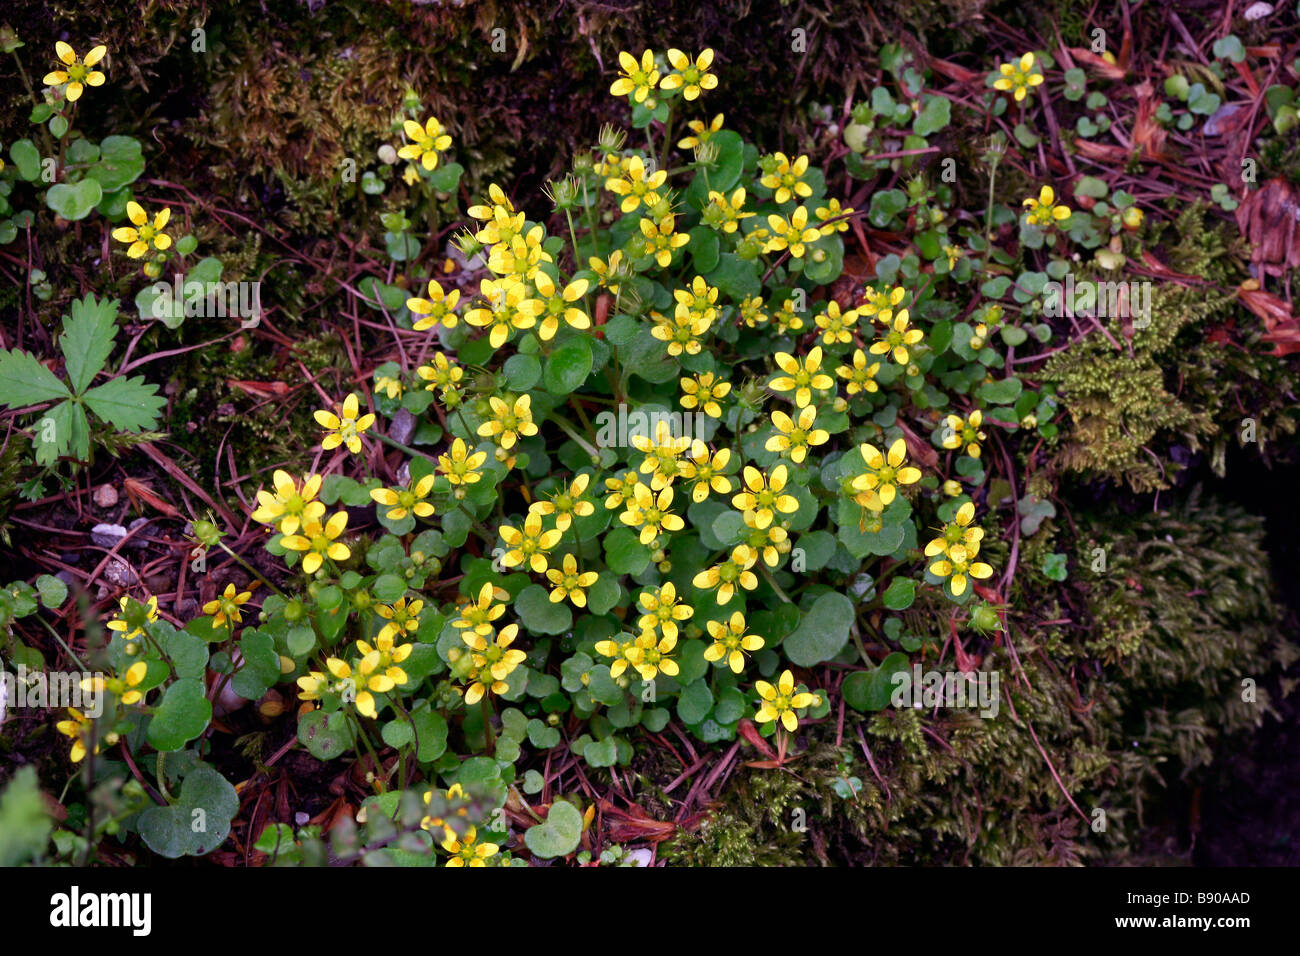 Saxifraga cymbalaria, saxifrage Stock Photo